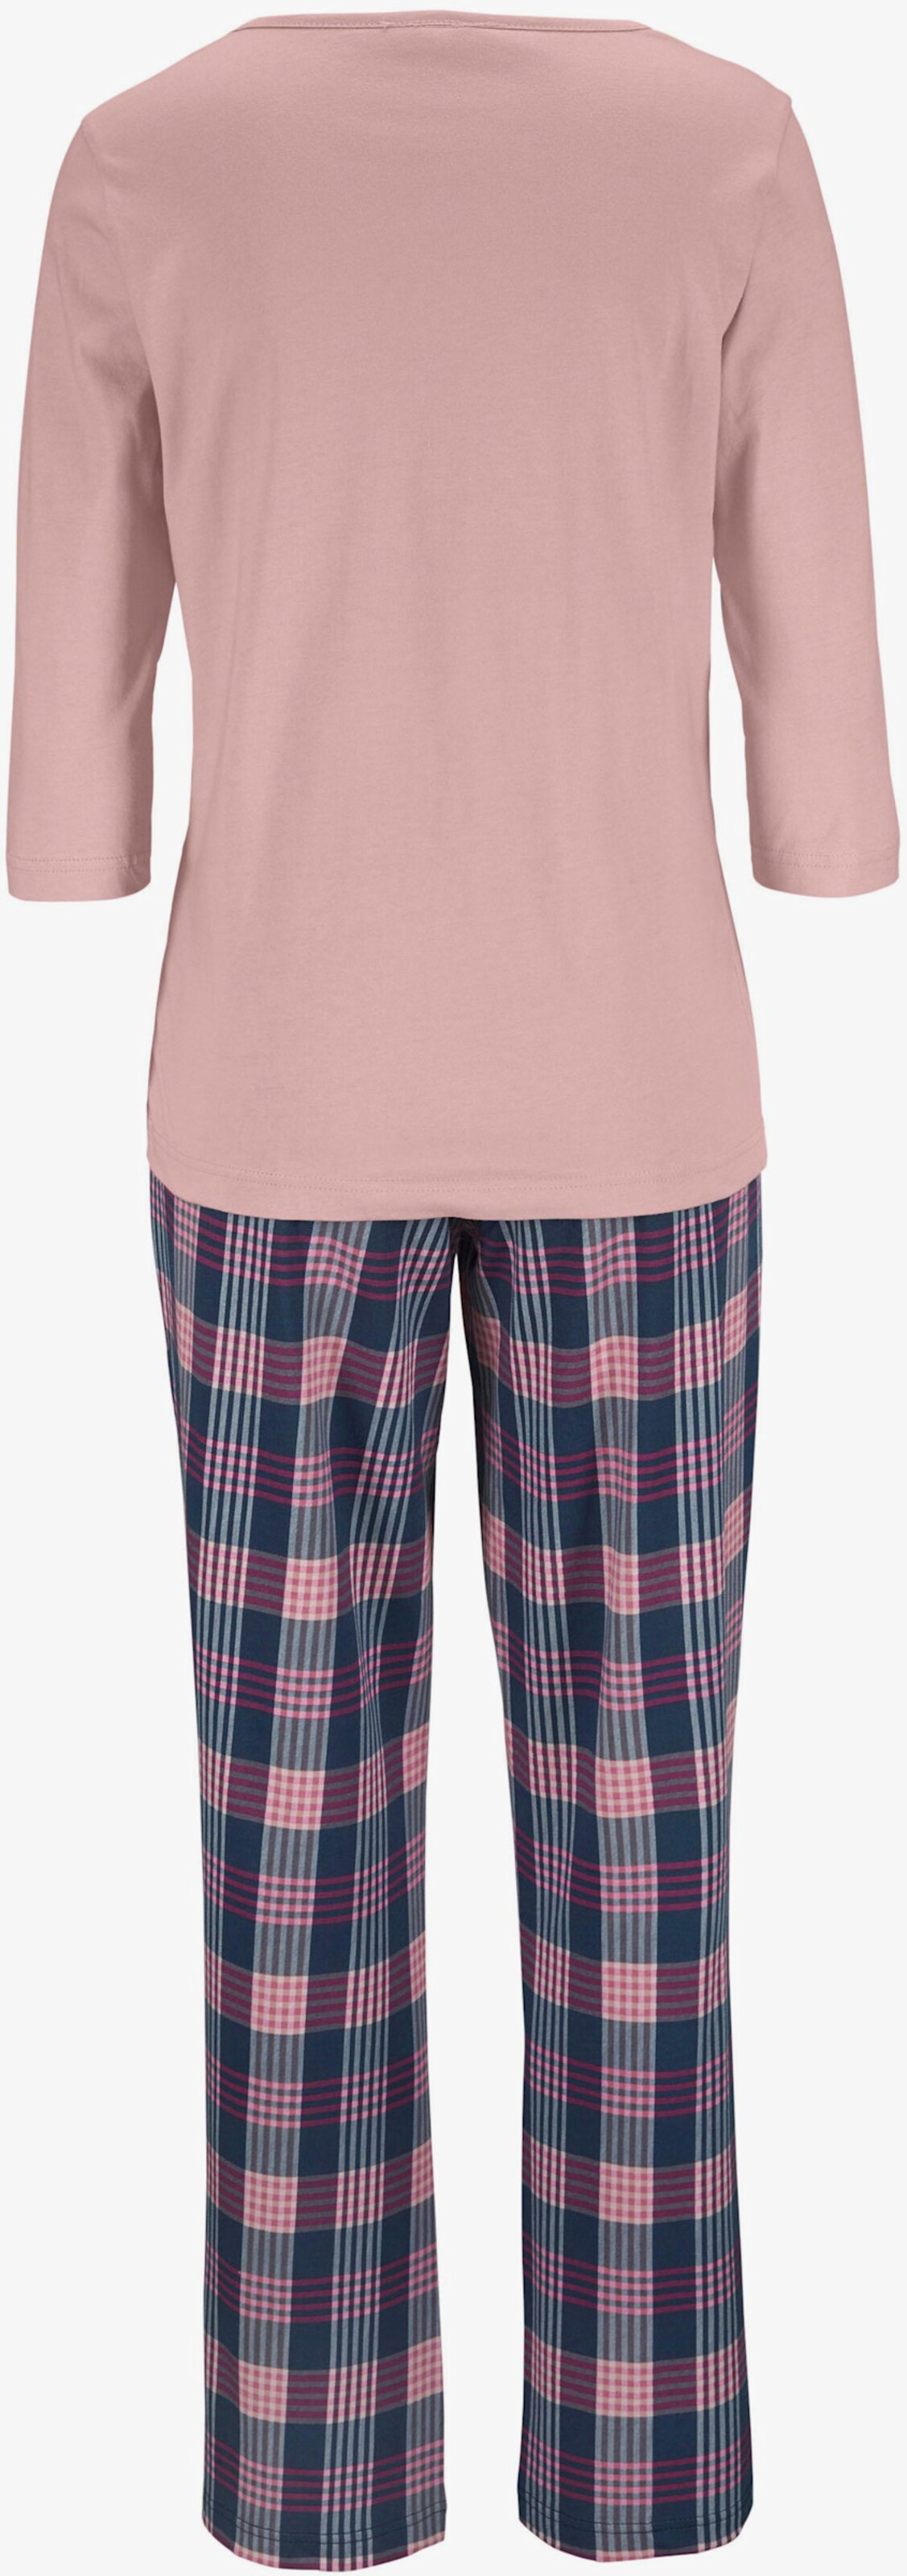 Vivance Dreams Pyjama - roze geruit, bordeaux geruit